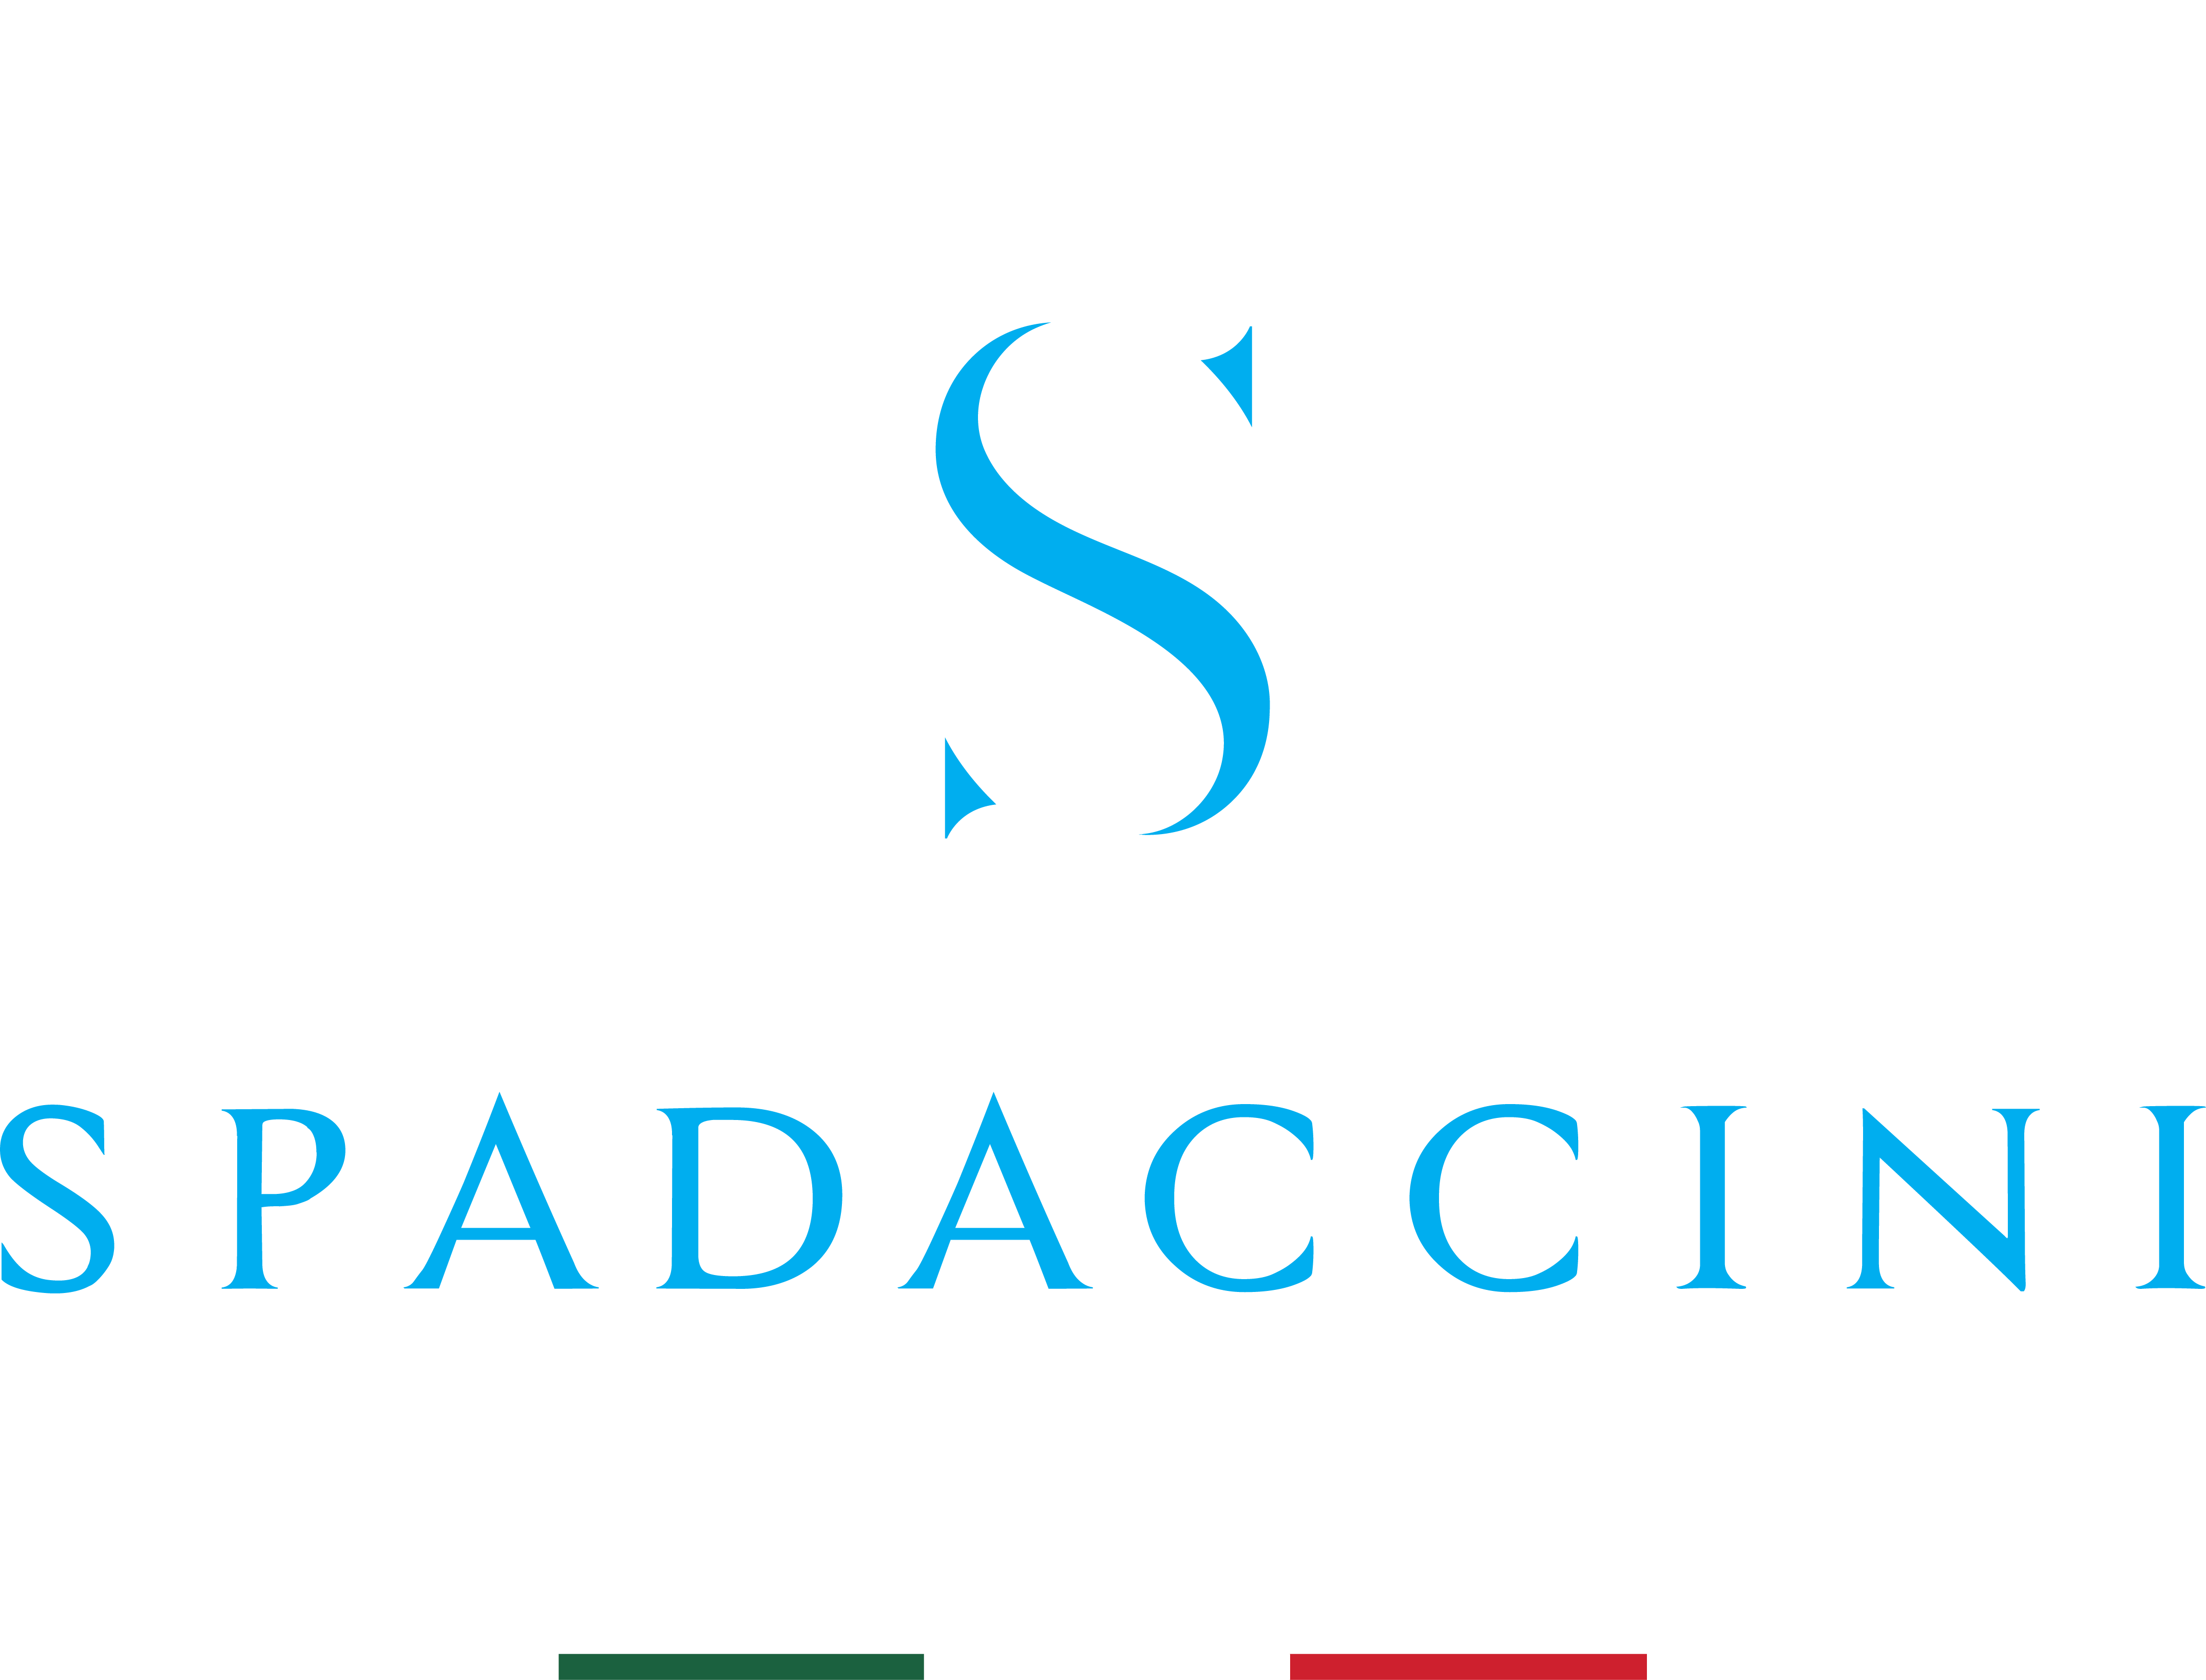 Spadaccini Plumbing